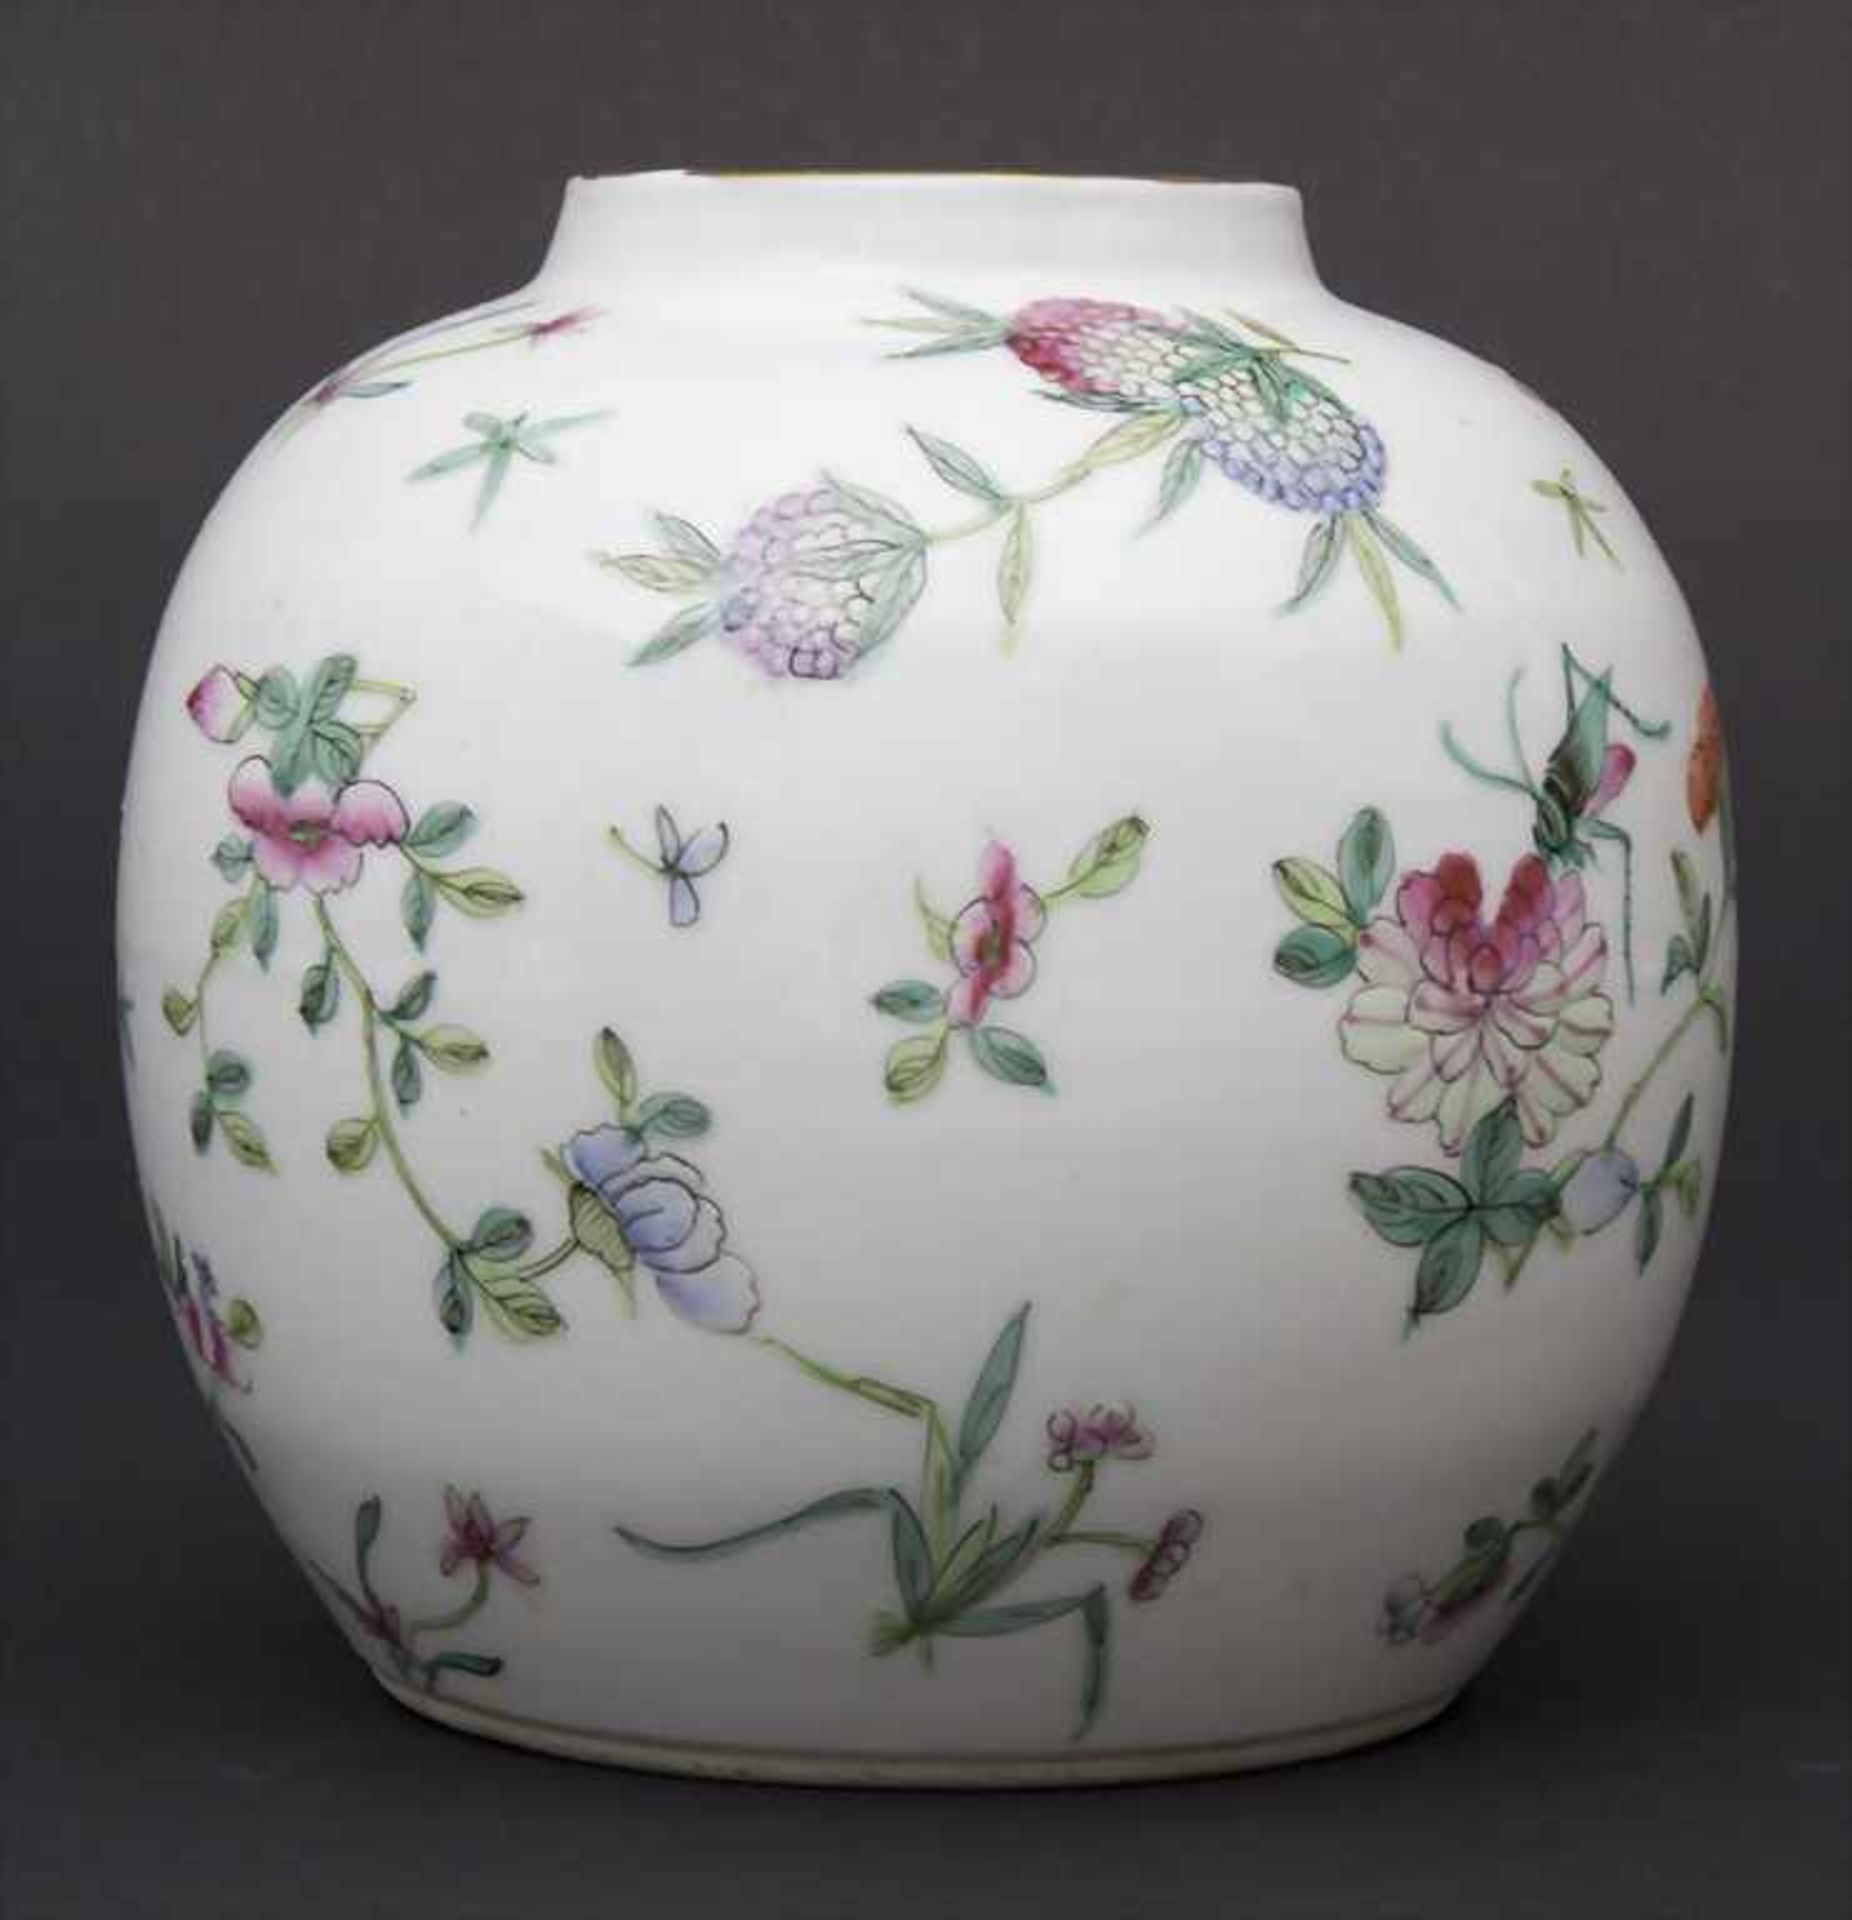 Ziervase, China, späte Qing-DynastieMaterial: Porzellan, polychrom mit Floral, Glückspfirsichen - Image 2 of 6